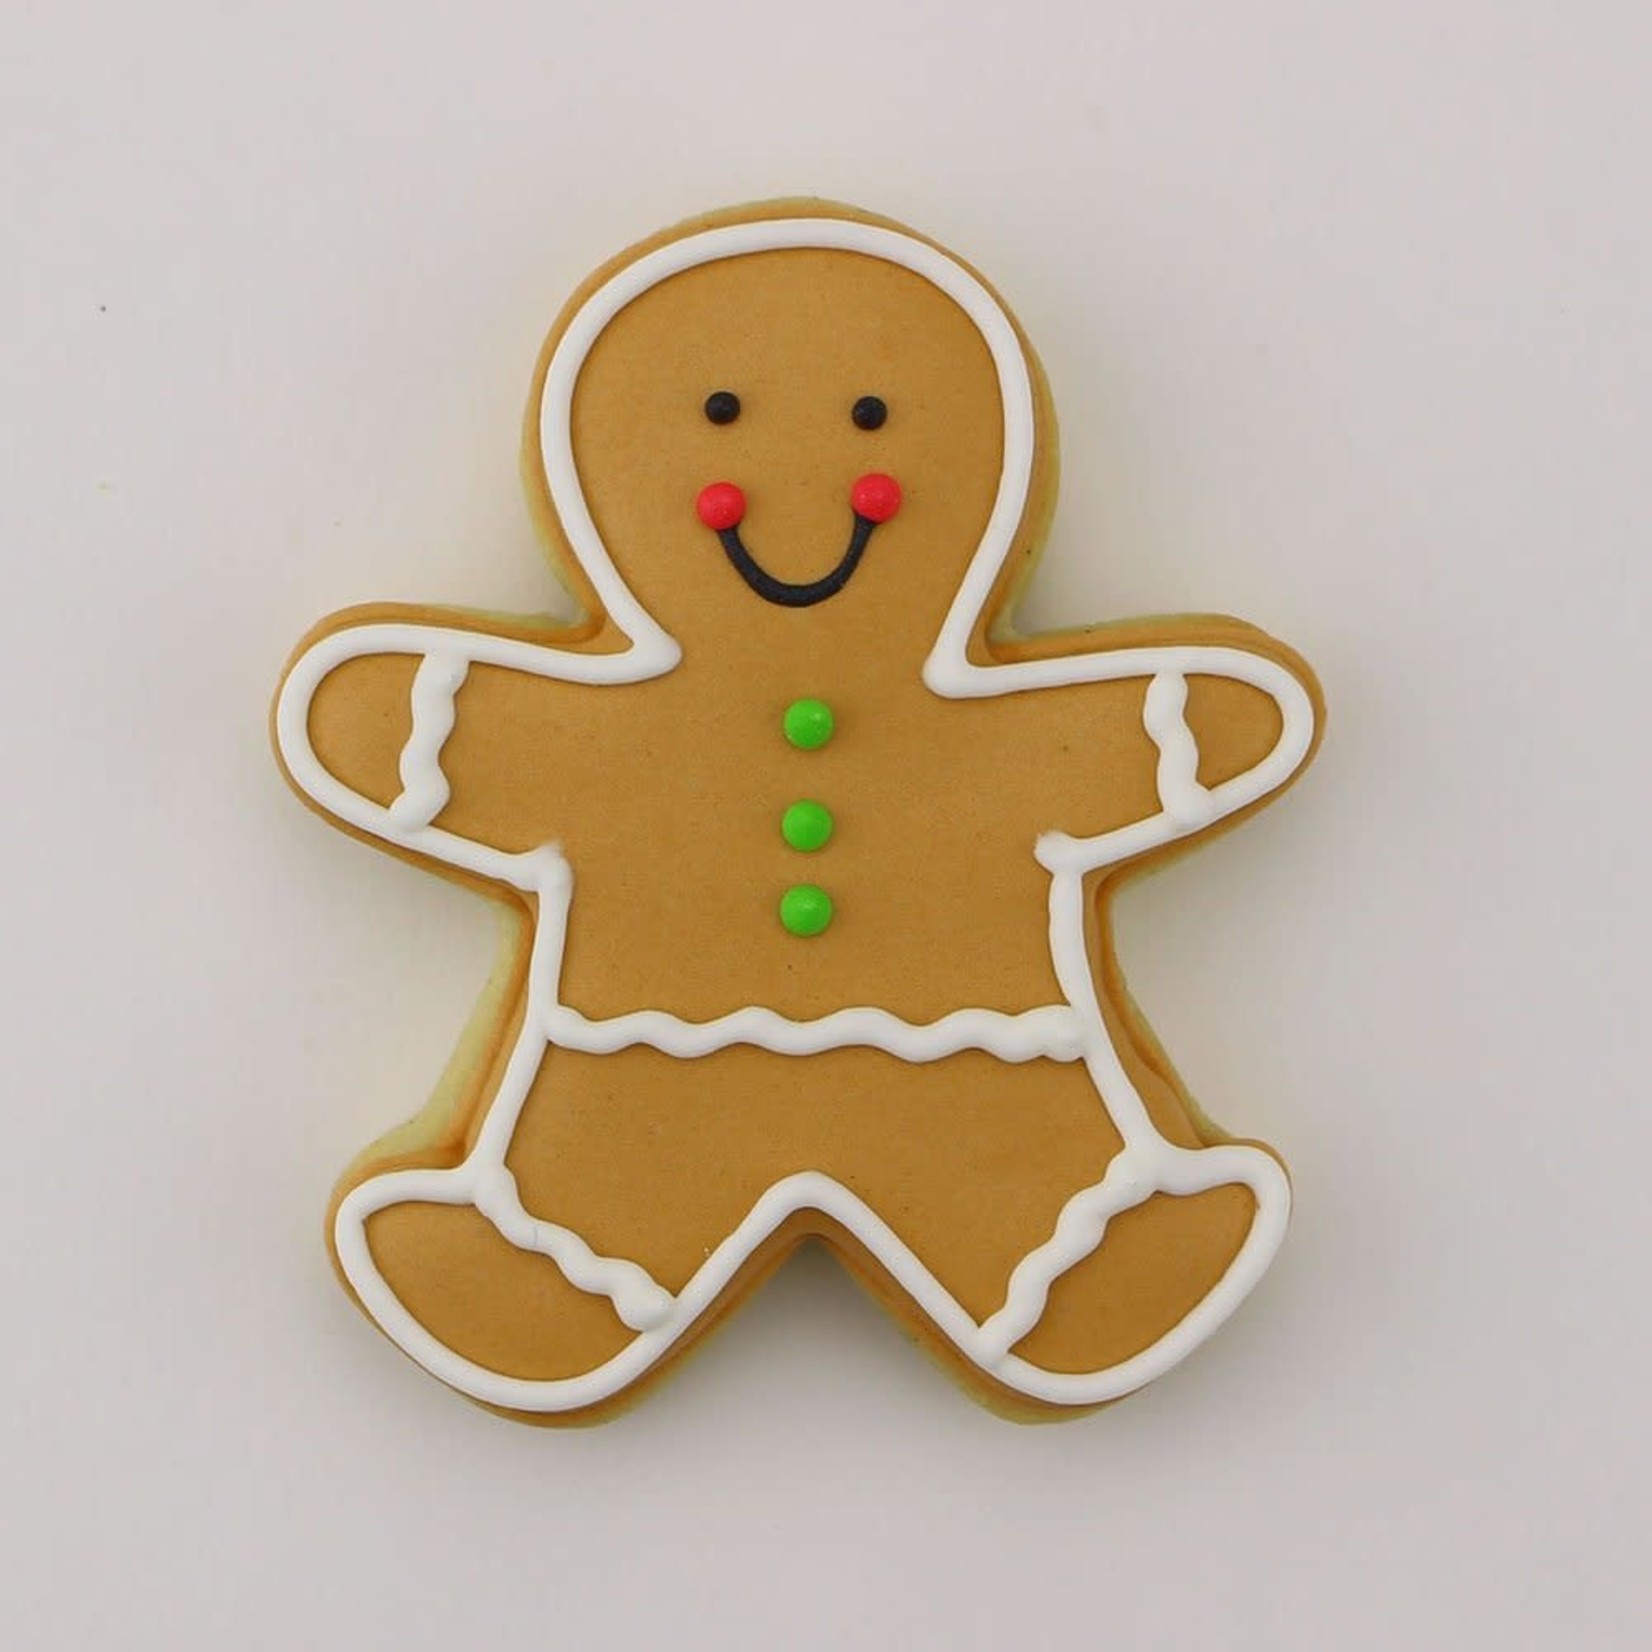 3" Gingerbread Man Cookie Cutter